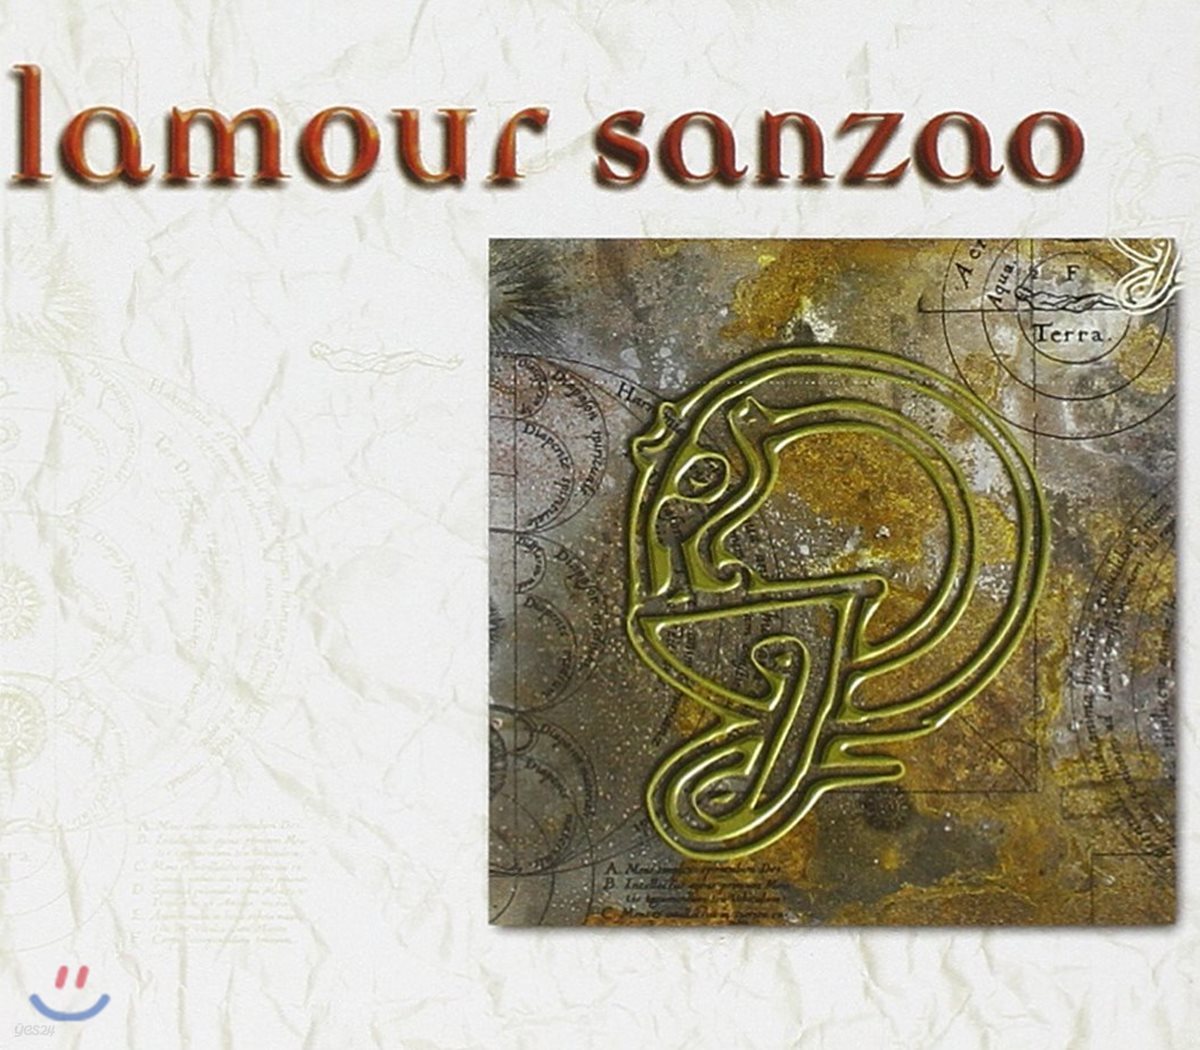 Lamour (라무르) - Sanzao